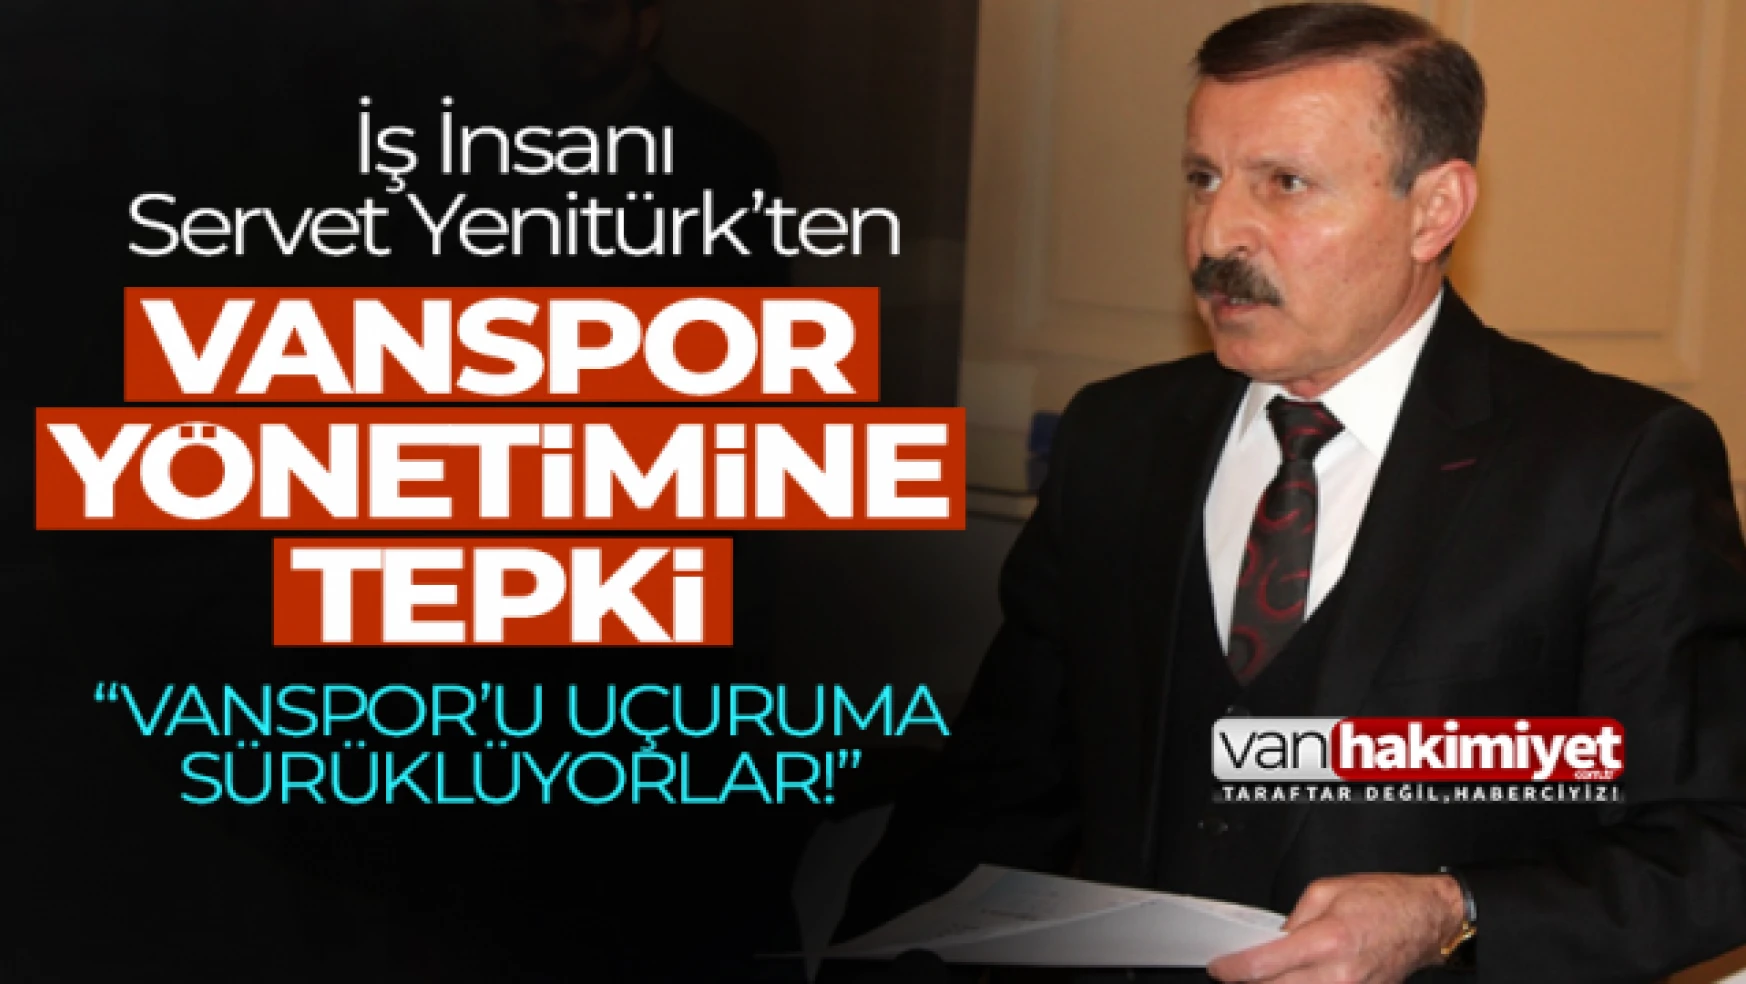 Servet Yenitürk'ten Vanspor yönetimine tepki!